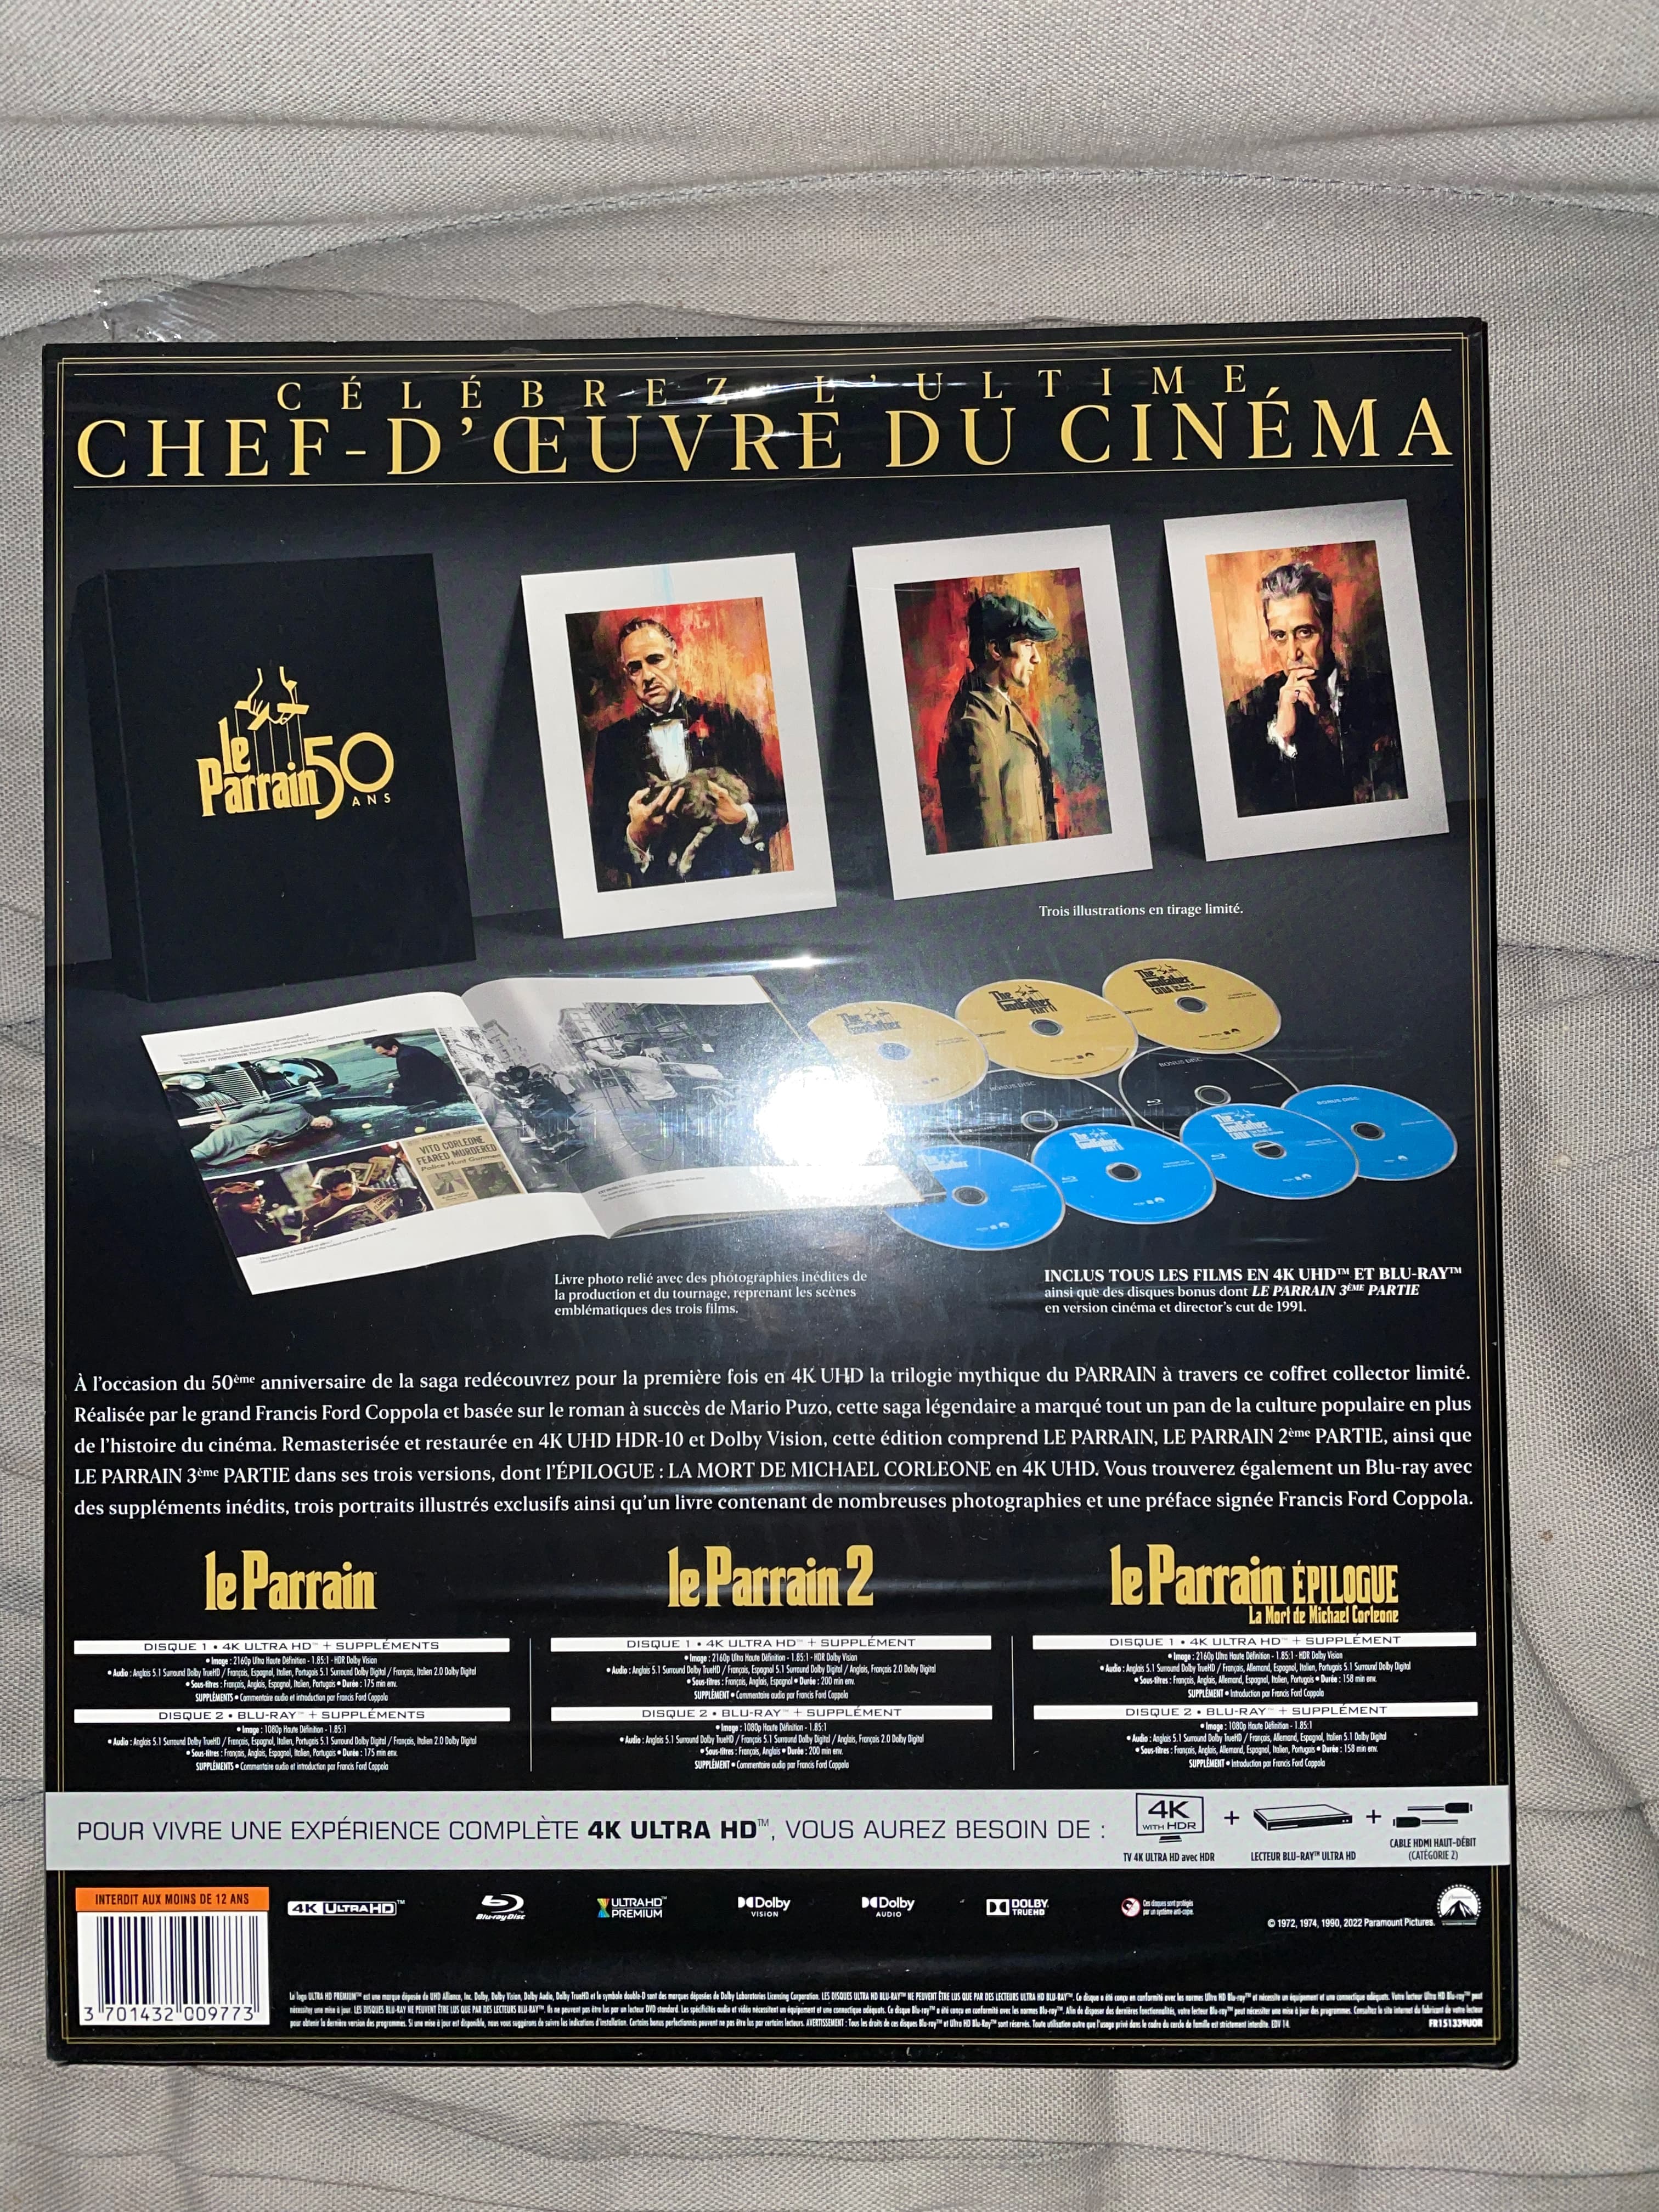 Le Parrain : un Blu-ray 4K Ultra HD pour les 50 ans - CNET France